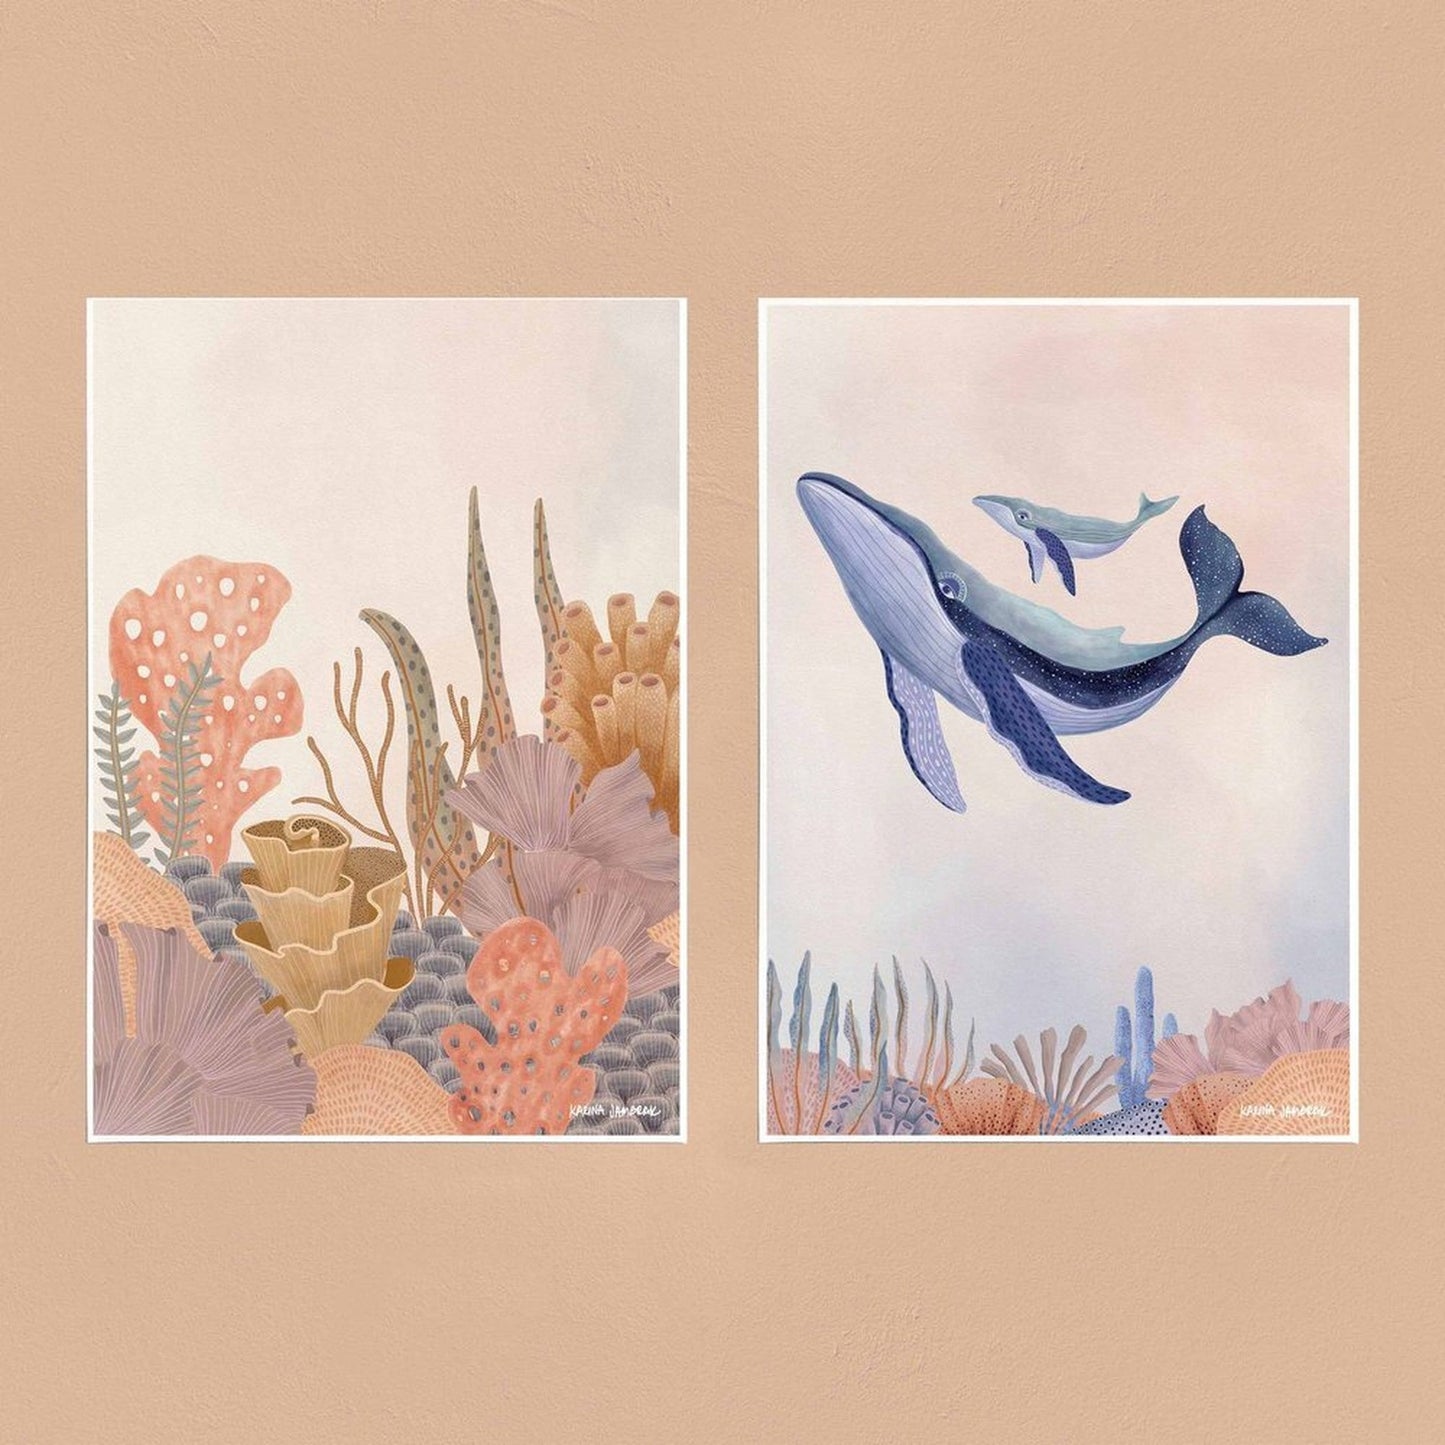 【sale】【karina jambrak art】pastel reef Ⅰ